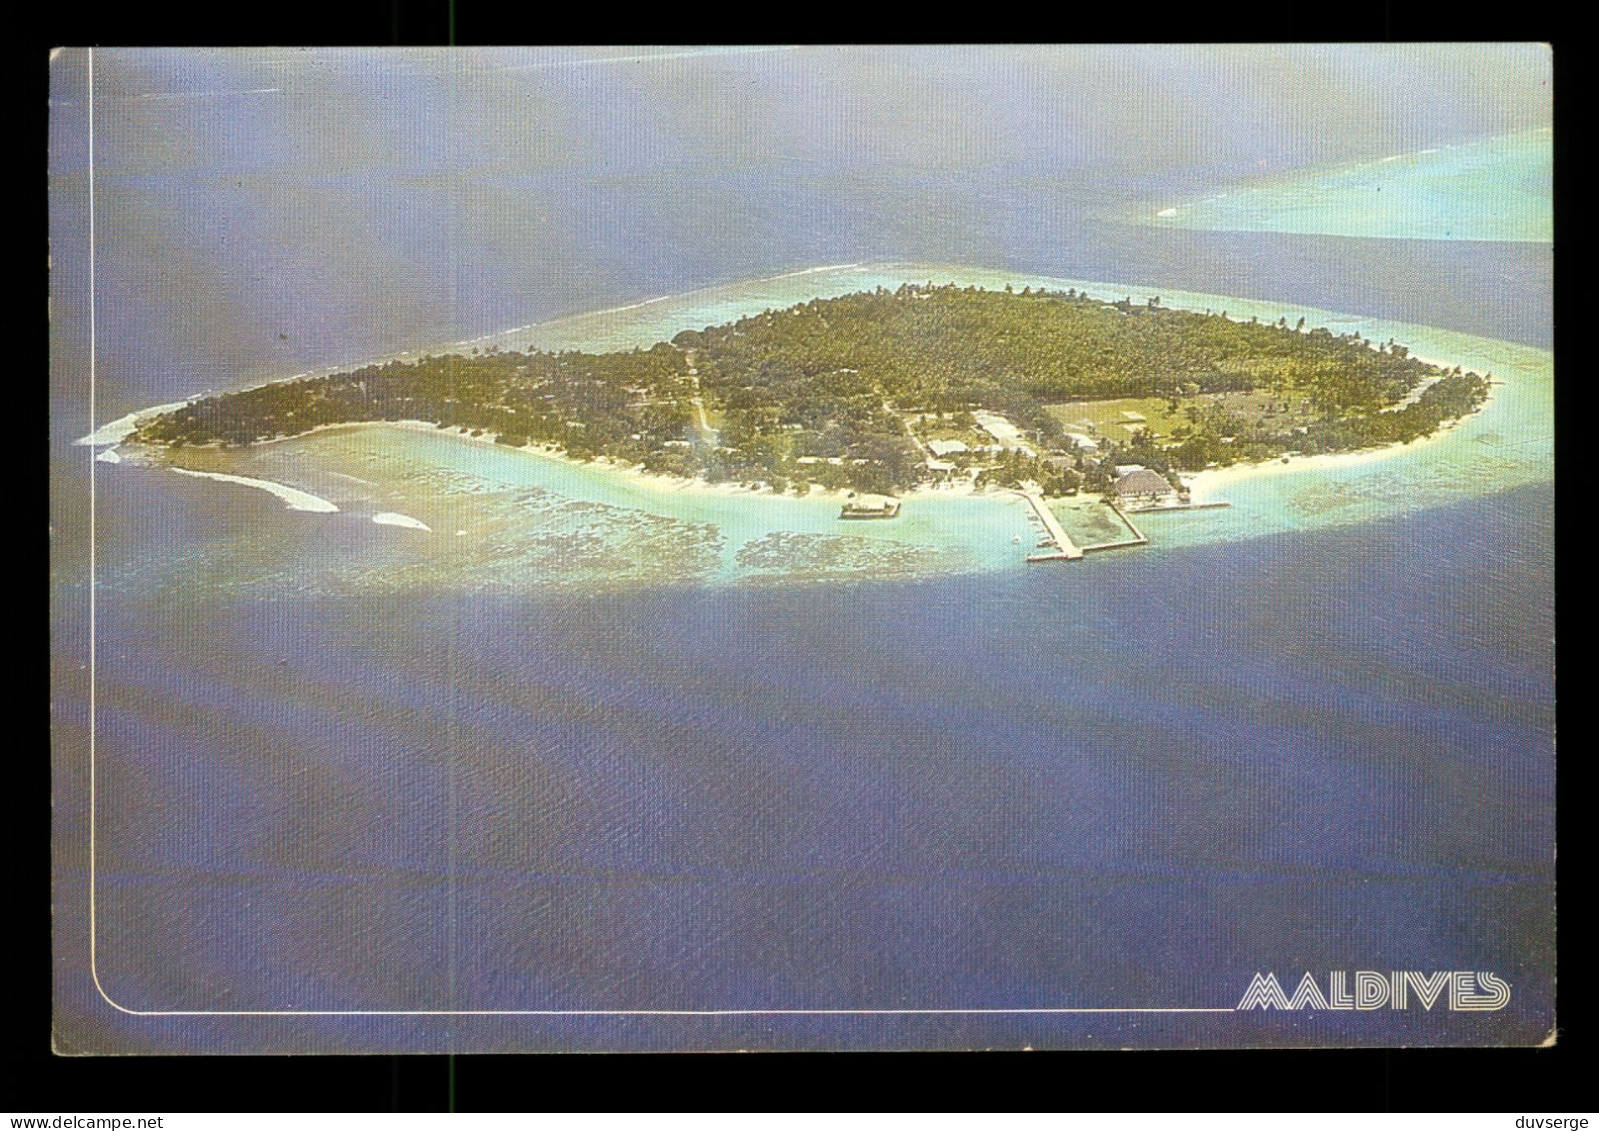 Maldives Resort Island In Male Atoll - Maldive